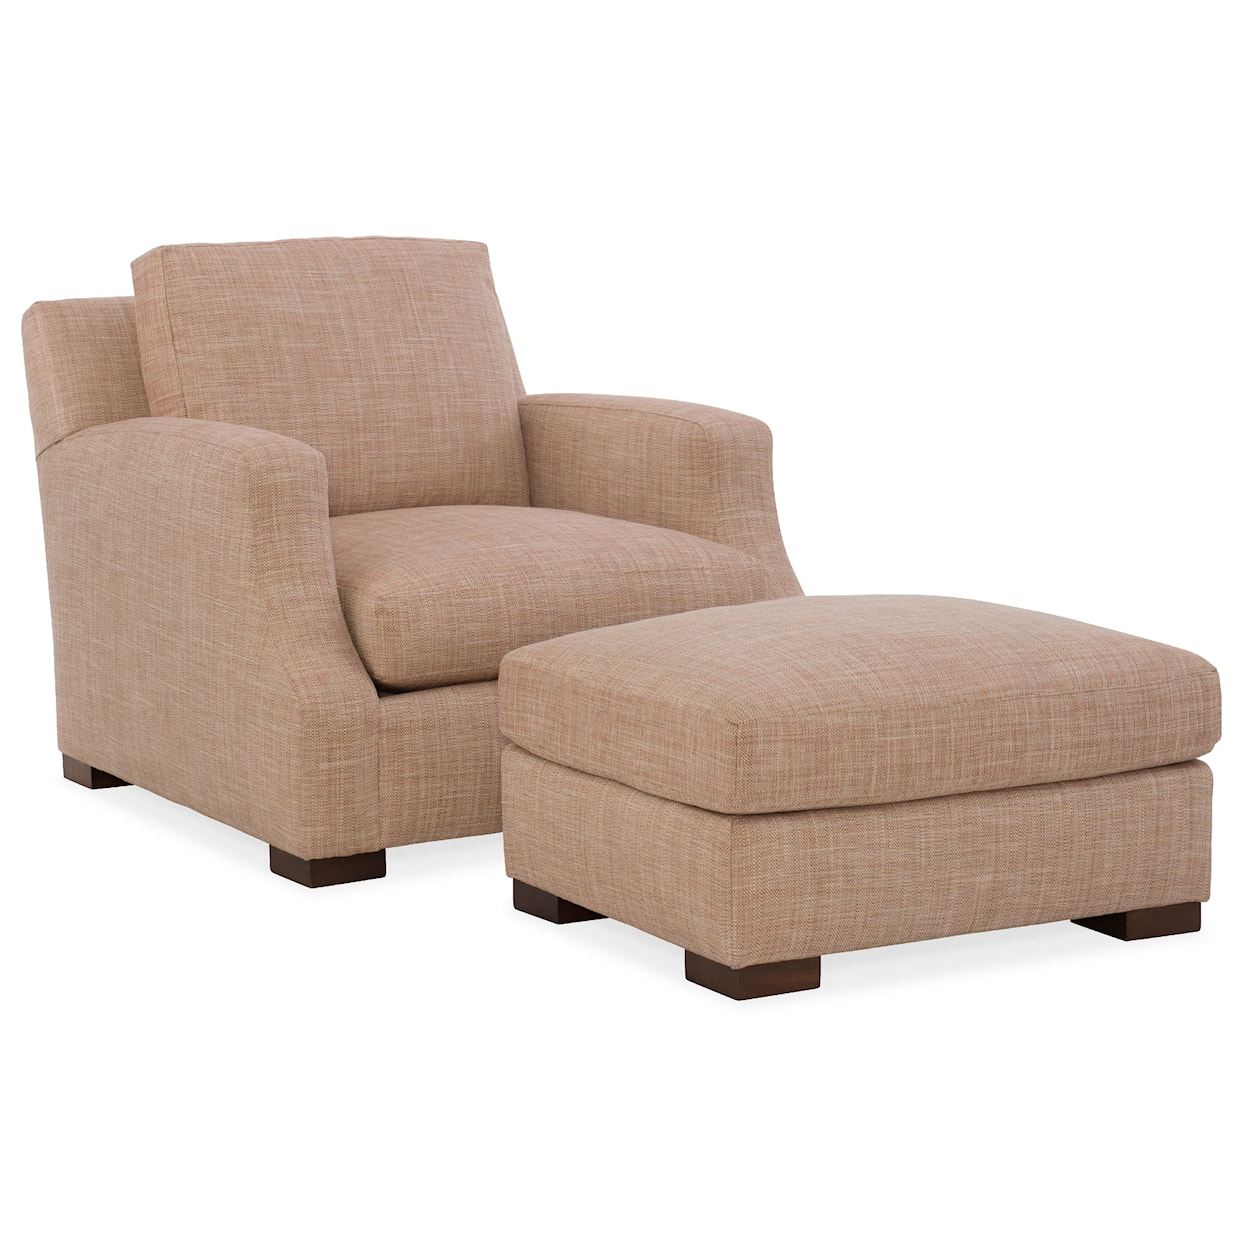 HF Custom Sariah Chair